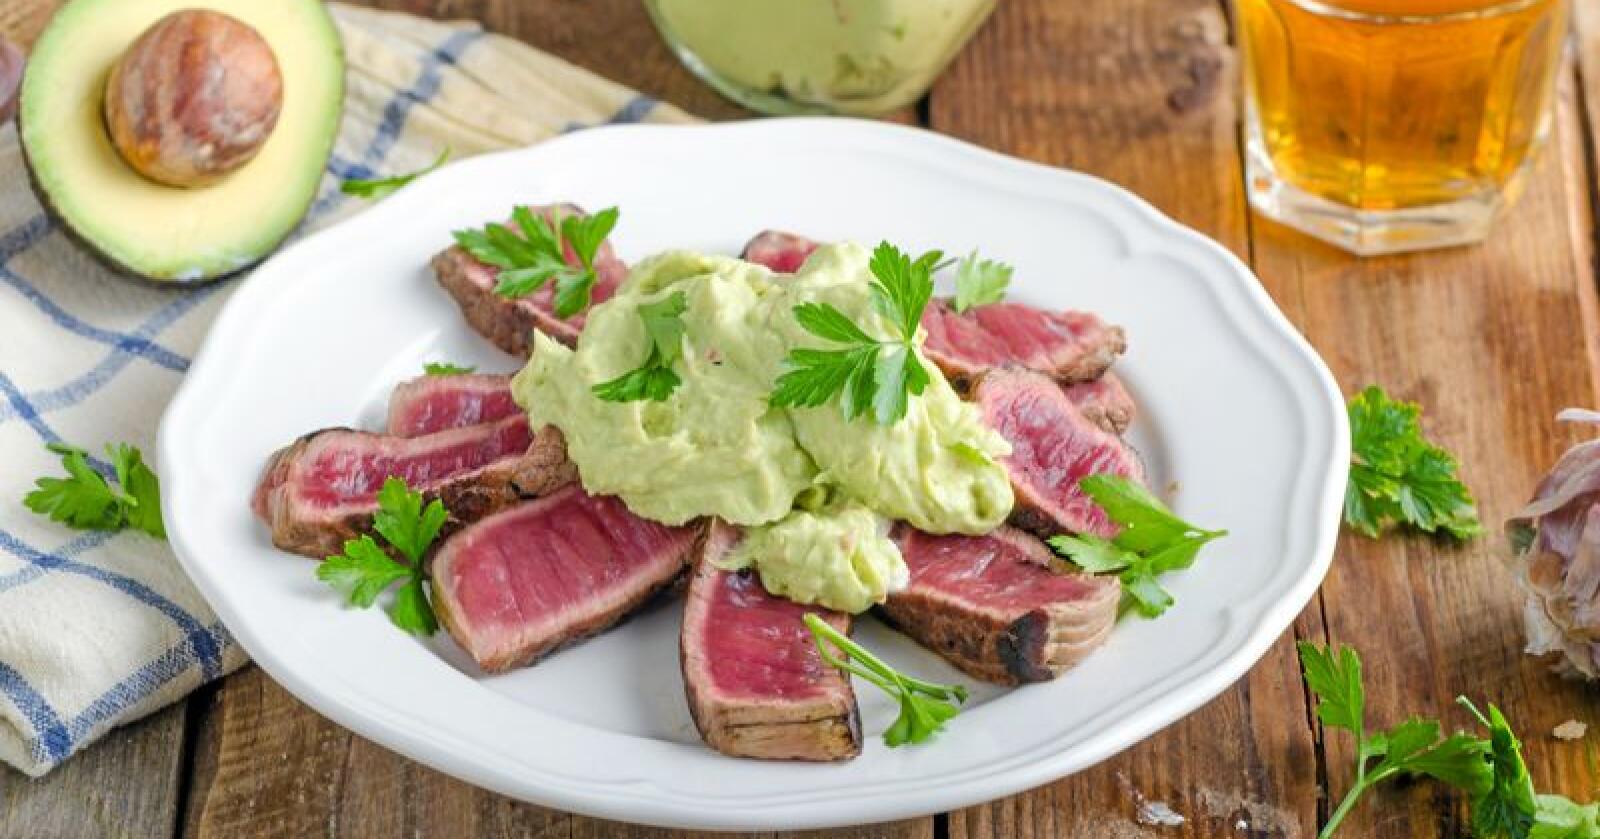 Ingen hovedrett: Du spiser ikke avokado til middag for å få i deg protein, skriver leserbrevforfatteren. Foto: Stepanek Photography / Mostphostos